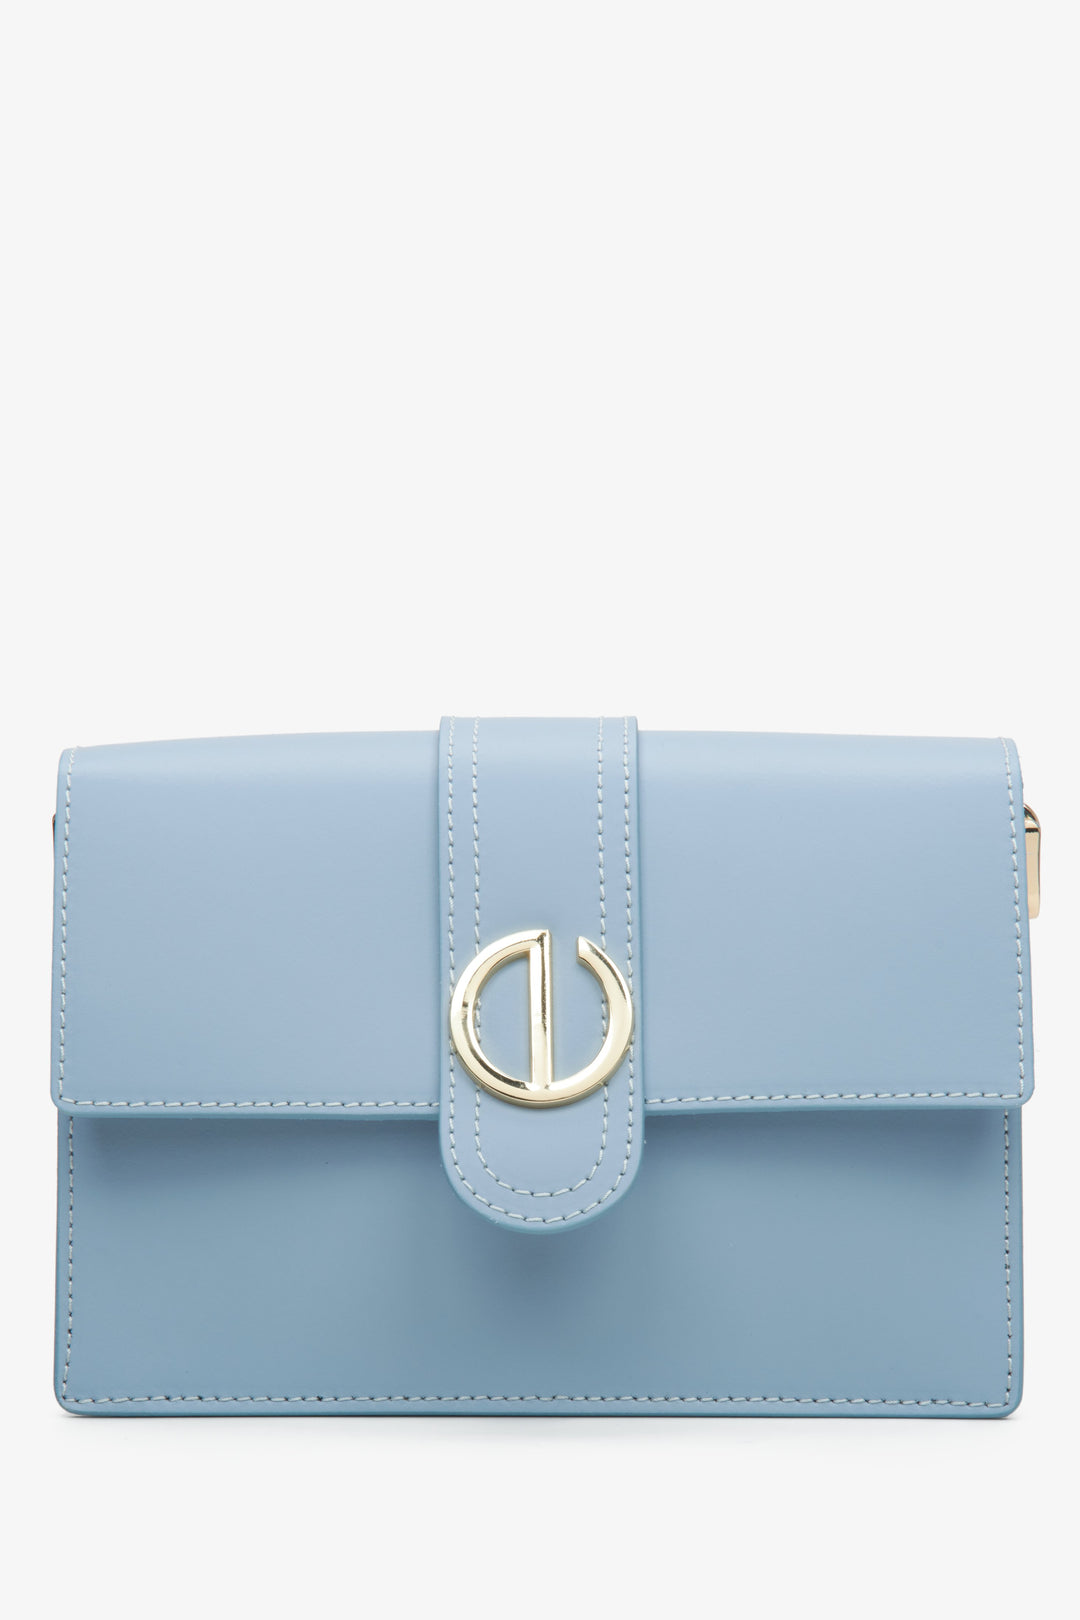 Women's Light Blue Italian Leather Handbag Estro ER00114777